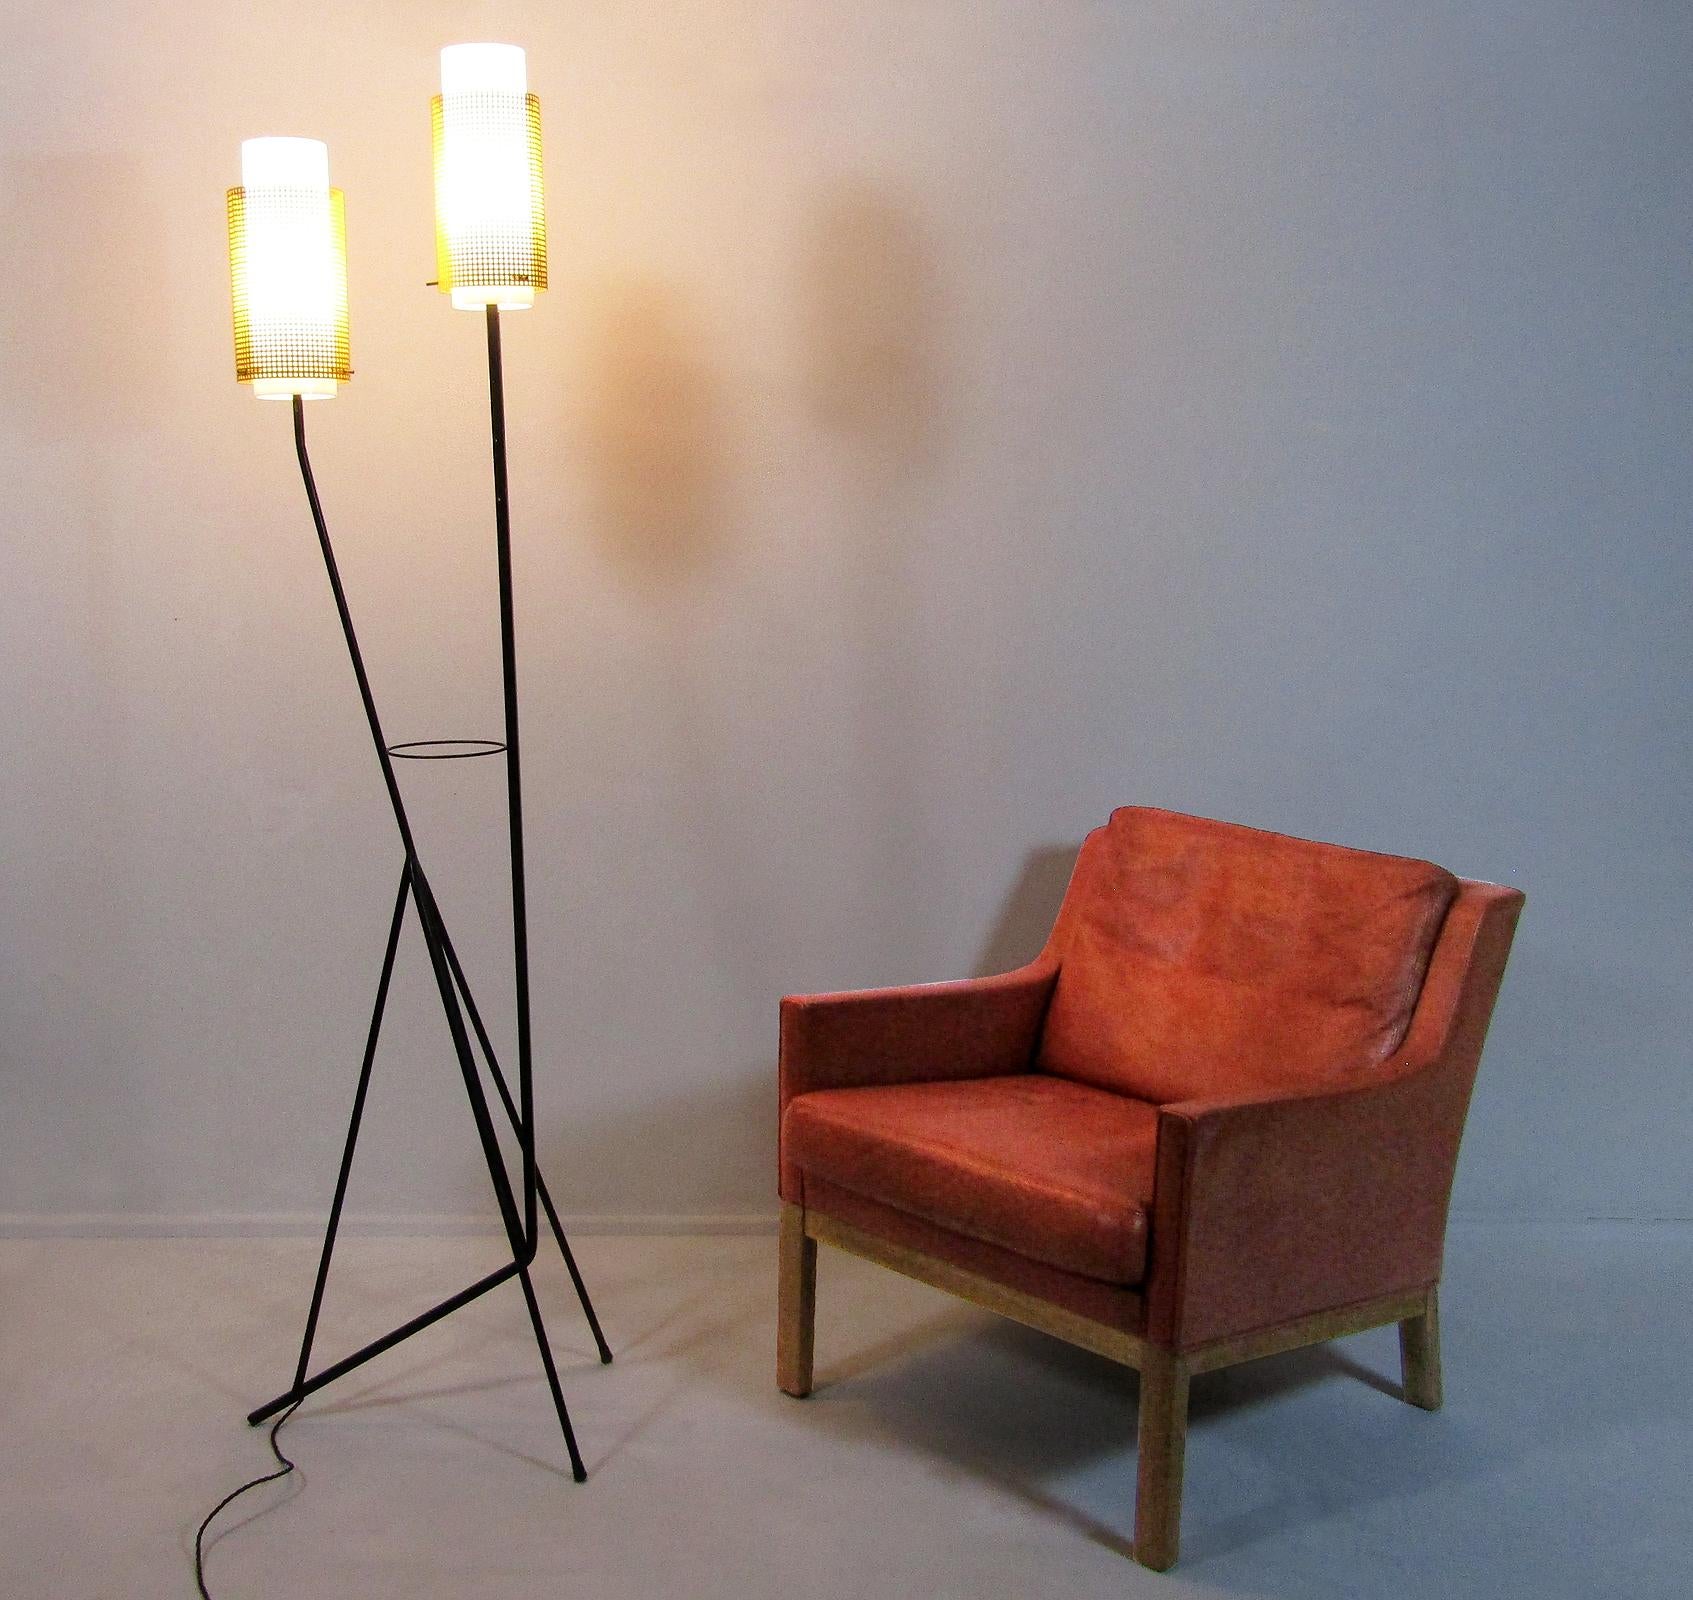 Un grand lampadaire moderniste français des années 1960, attribué à Mathieu Mategot.

En plexiglas et en acier perforé, ce double luminaire élégant évoque un couple d'amoureux enlacés. Il émet une lumière chaude et dispersée sur une large